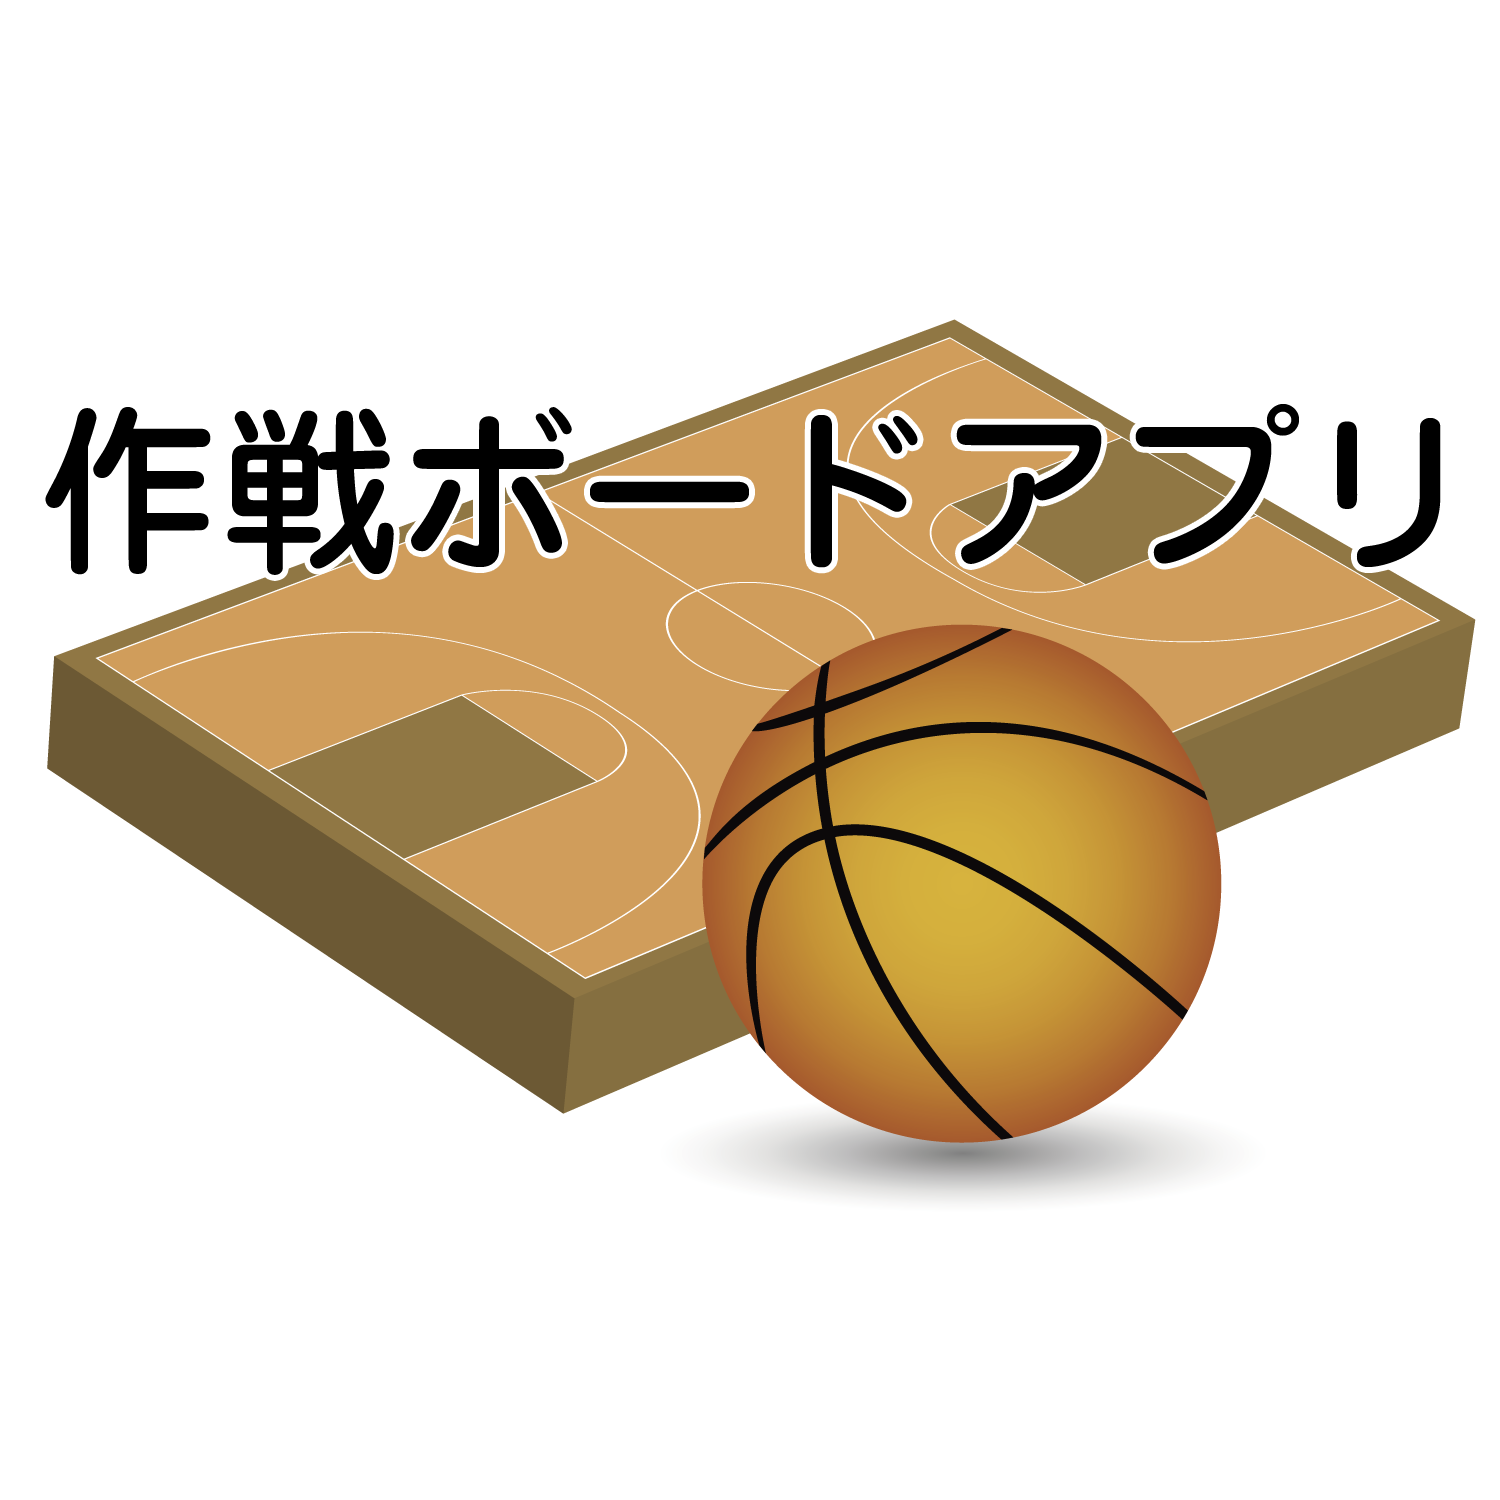 バスケットボール作戦ボードパワー | 作戦ボードアプリ